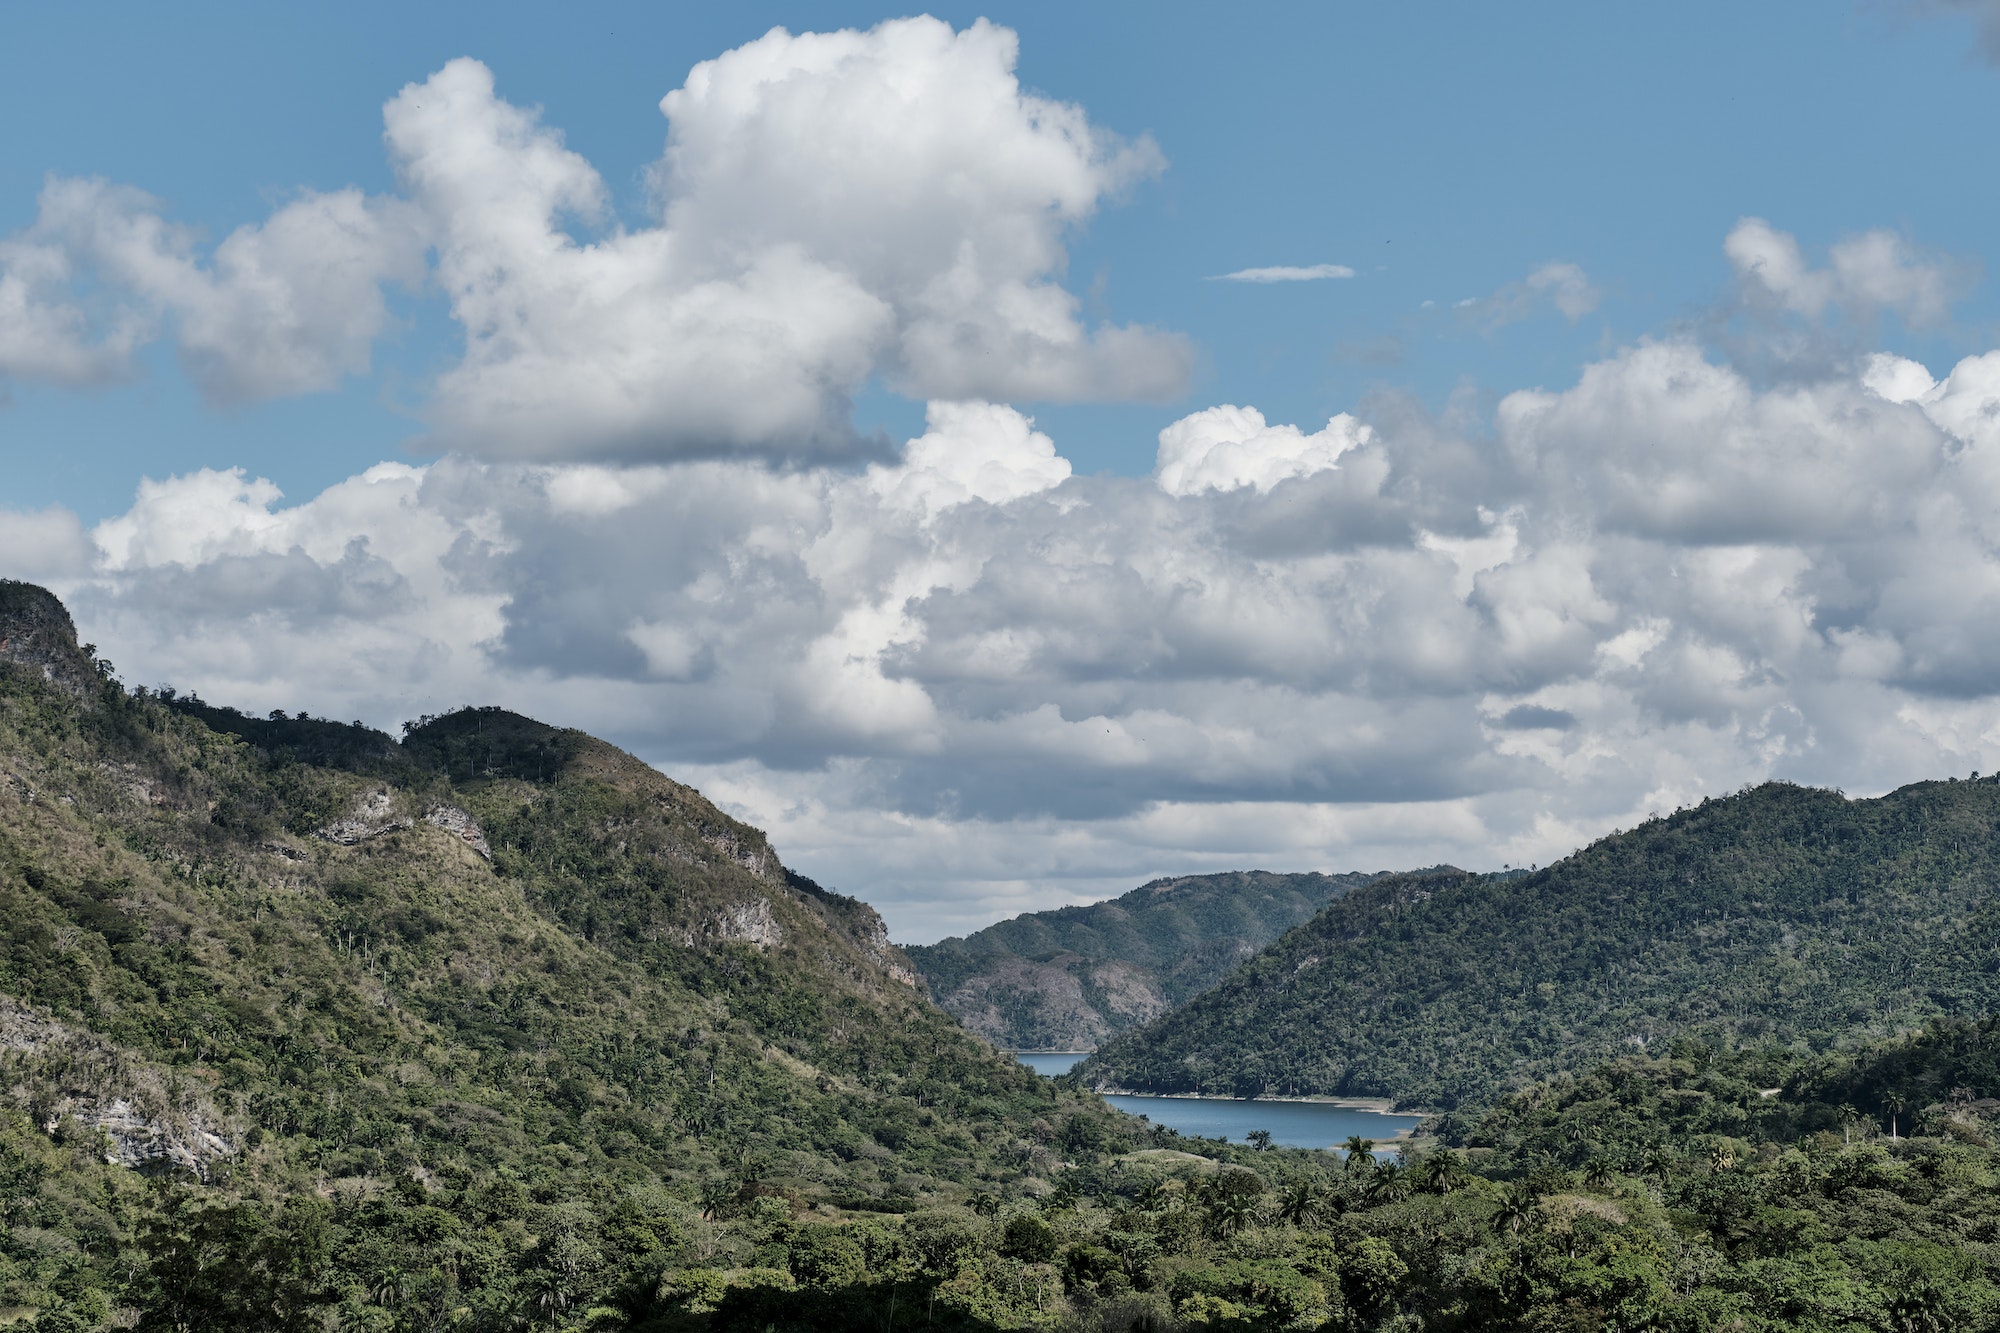 Topes de Collantes Natural National Park, Hanabanilla River, Cienfuegos, Cuba. Mountain landscape